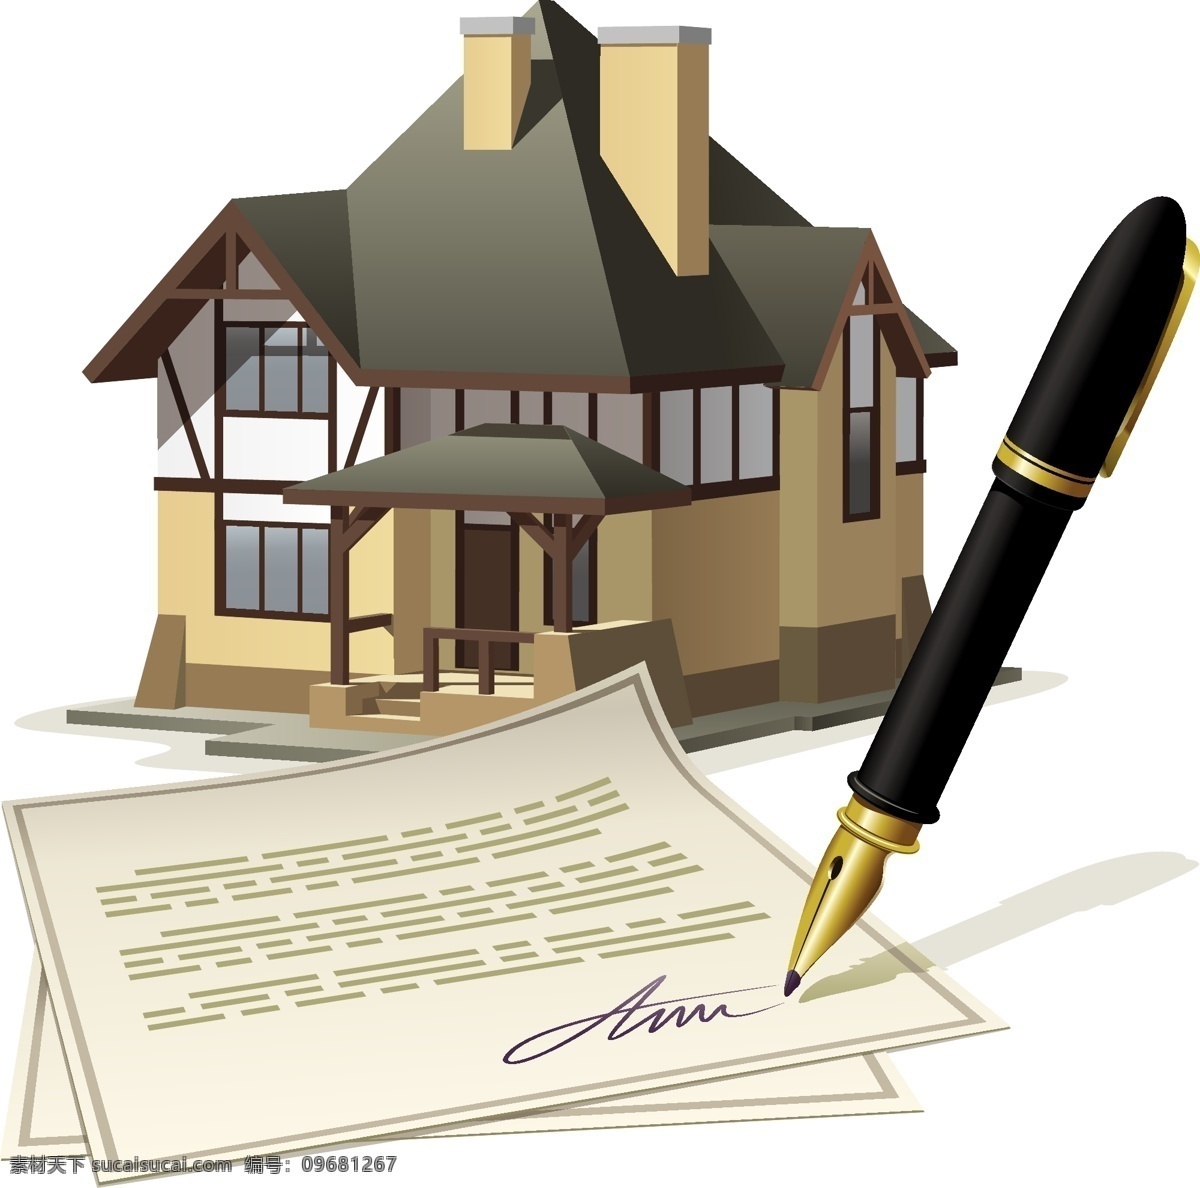 钢笔 签字笔 文具 签字 书写 支付 矢量 房子别墅 生活用品 生活百科